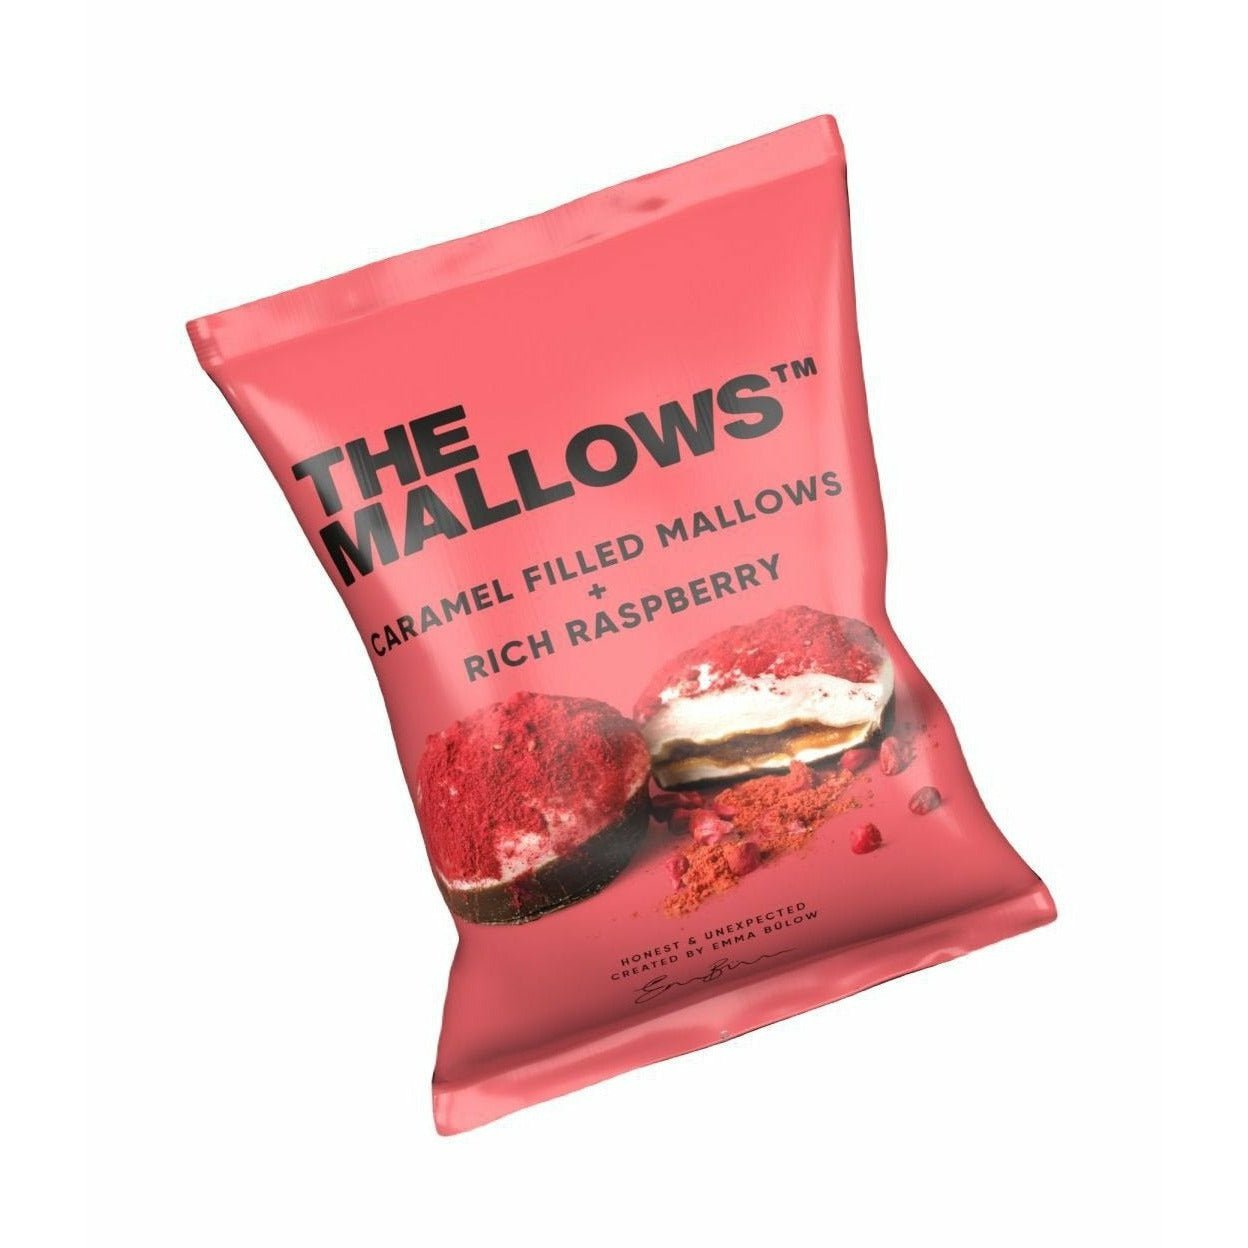 The Mallows Marshmallows med karamellfyllning - Rich Raspberry, 11g